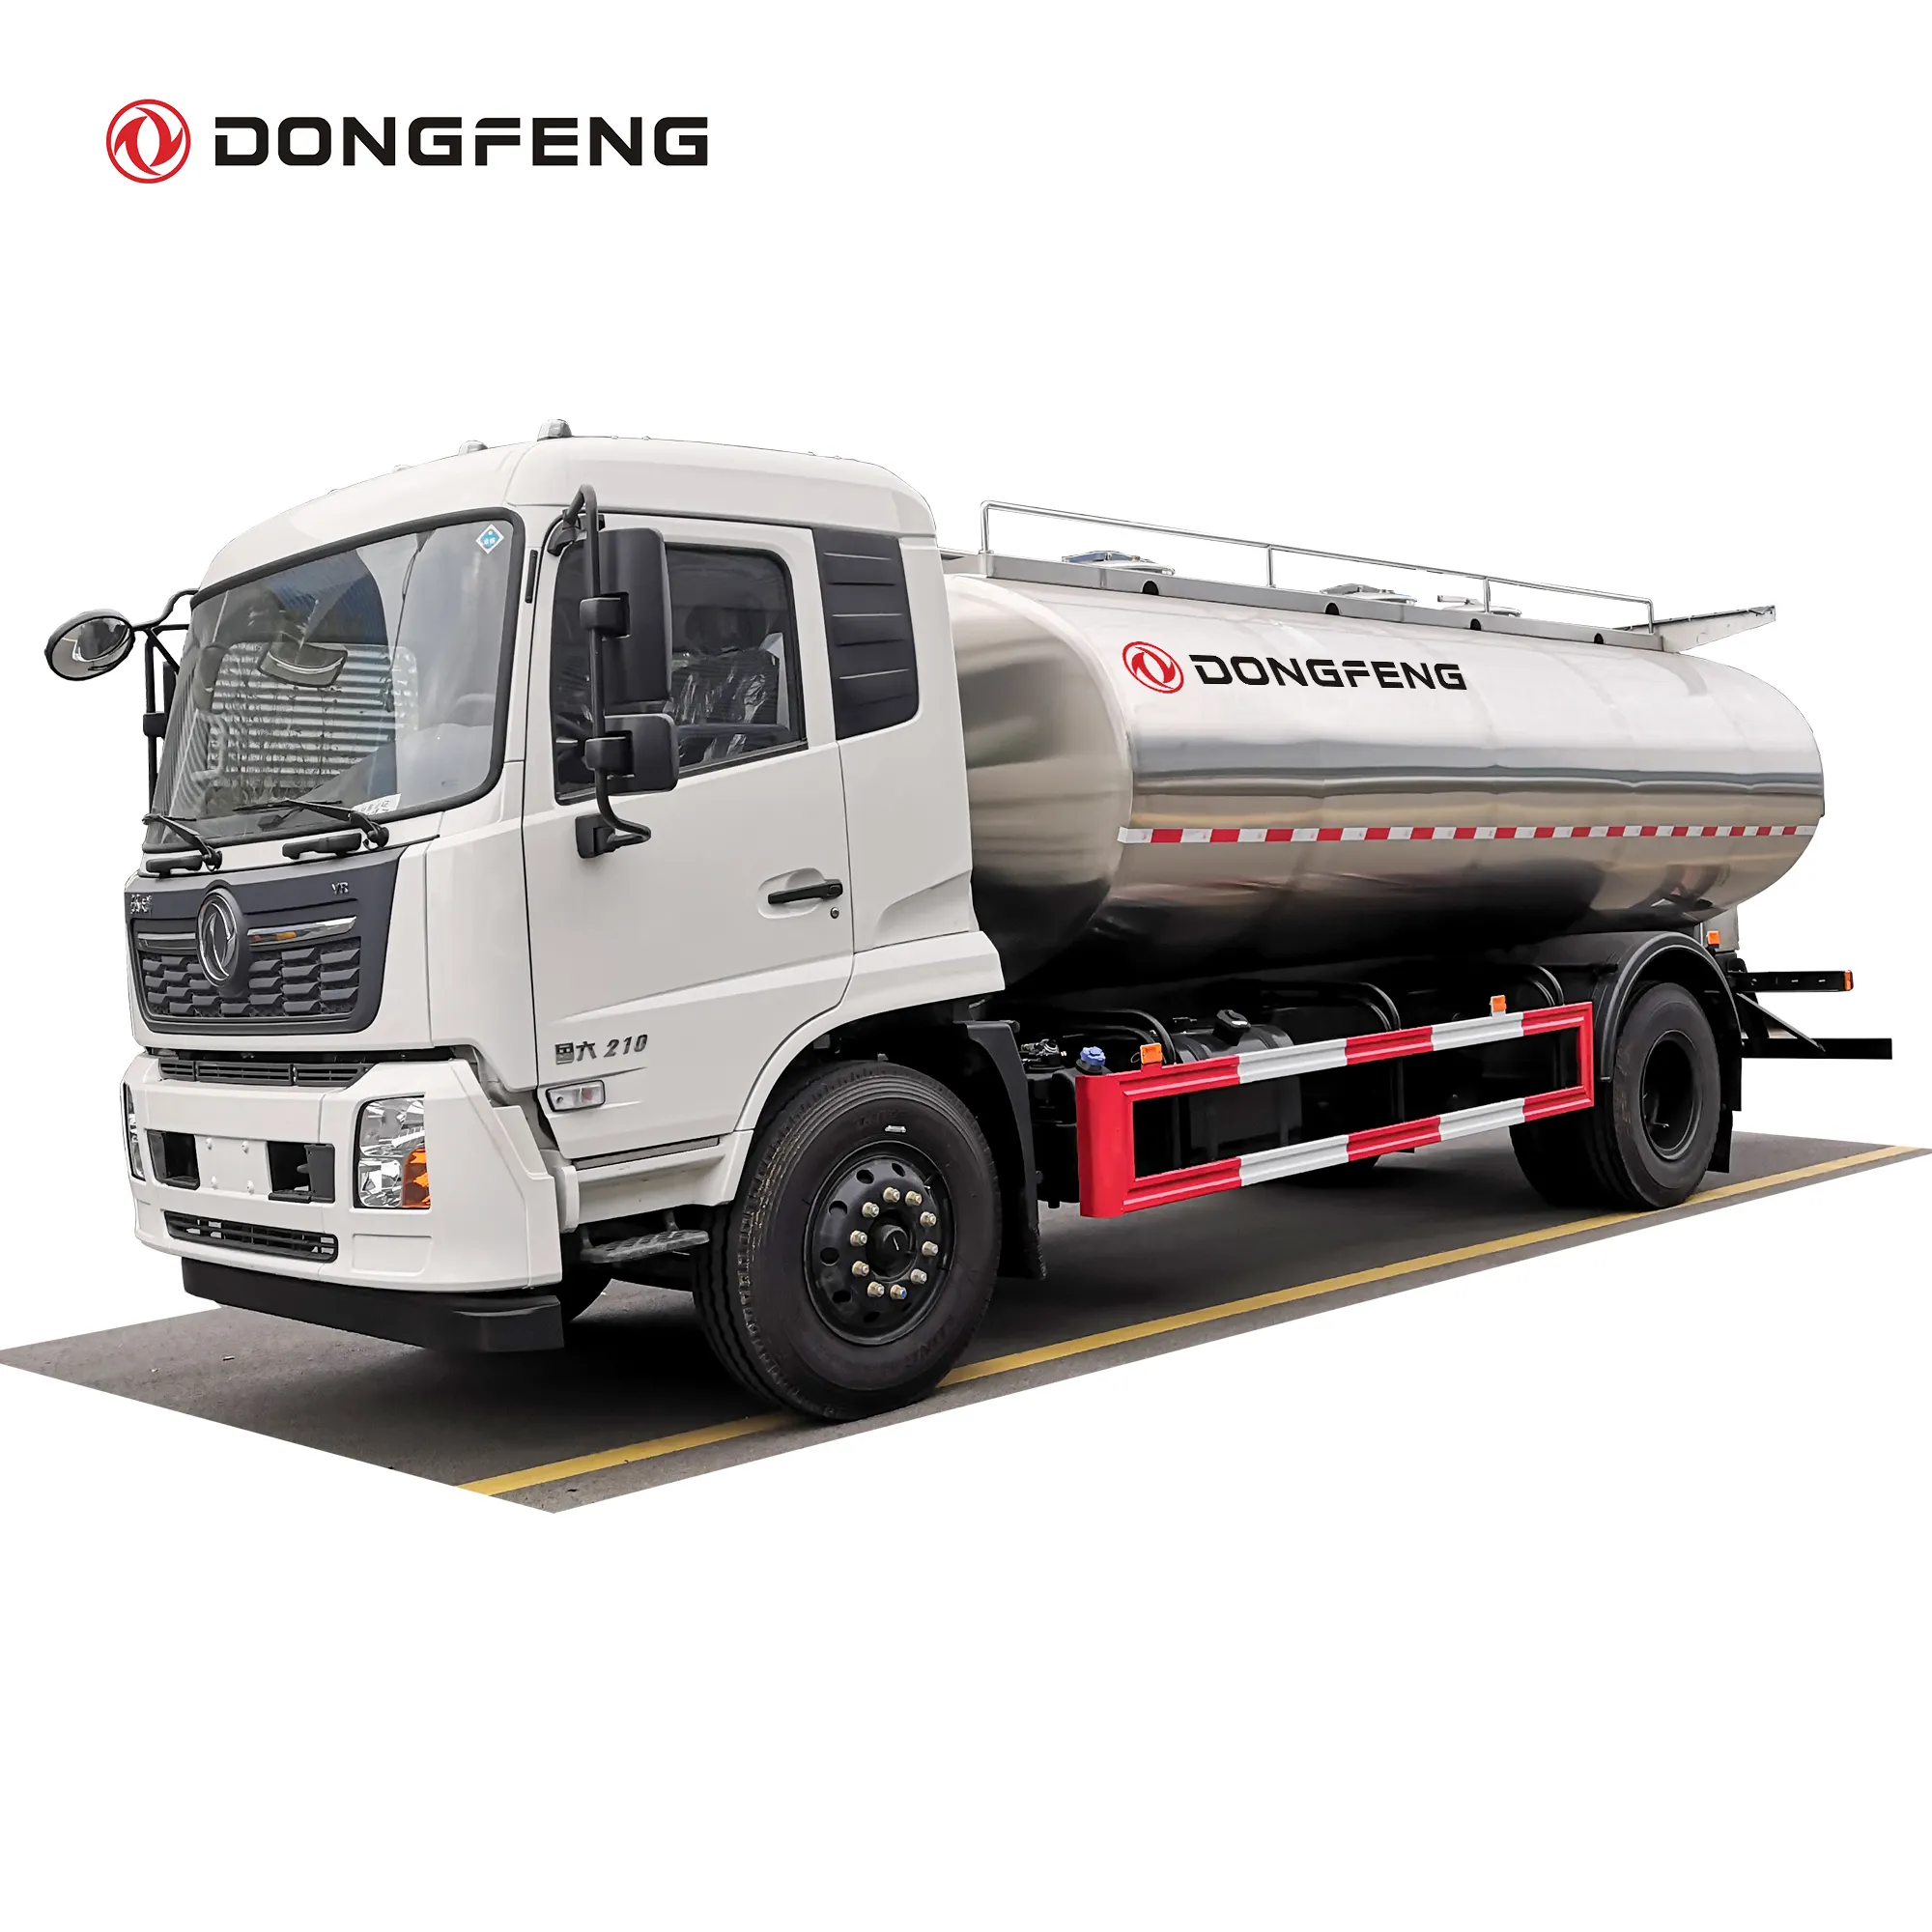 Tanque do tanque do dongfeng 12000 litros de aço inoxidável 304 tanque para a entrega da água